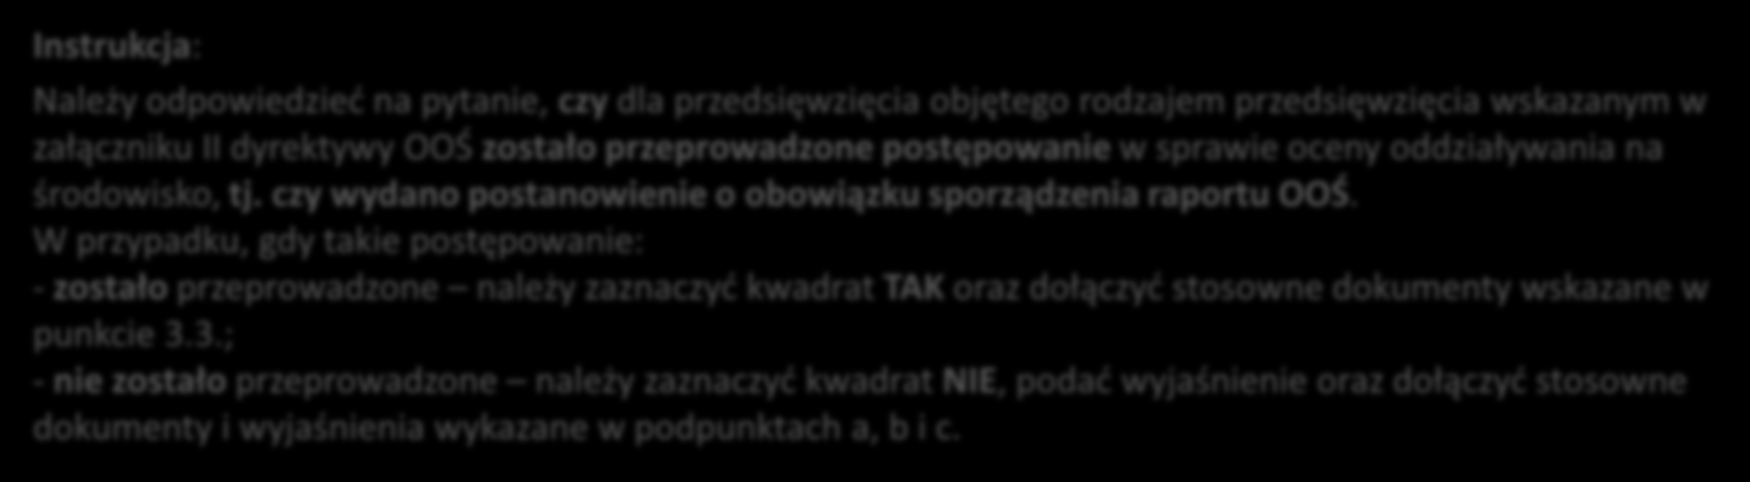 ANALIZA ZGODNOŚCI PROJEKTU Z POLITYKĄ OCHRONY ŚRODOWISKA cz. II 3.4 c.d.